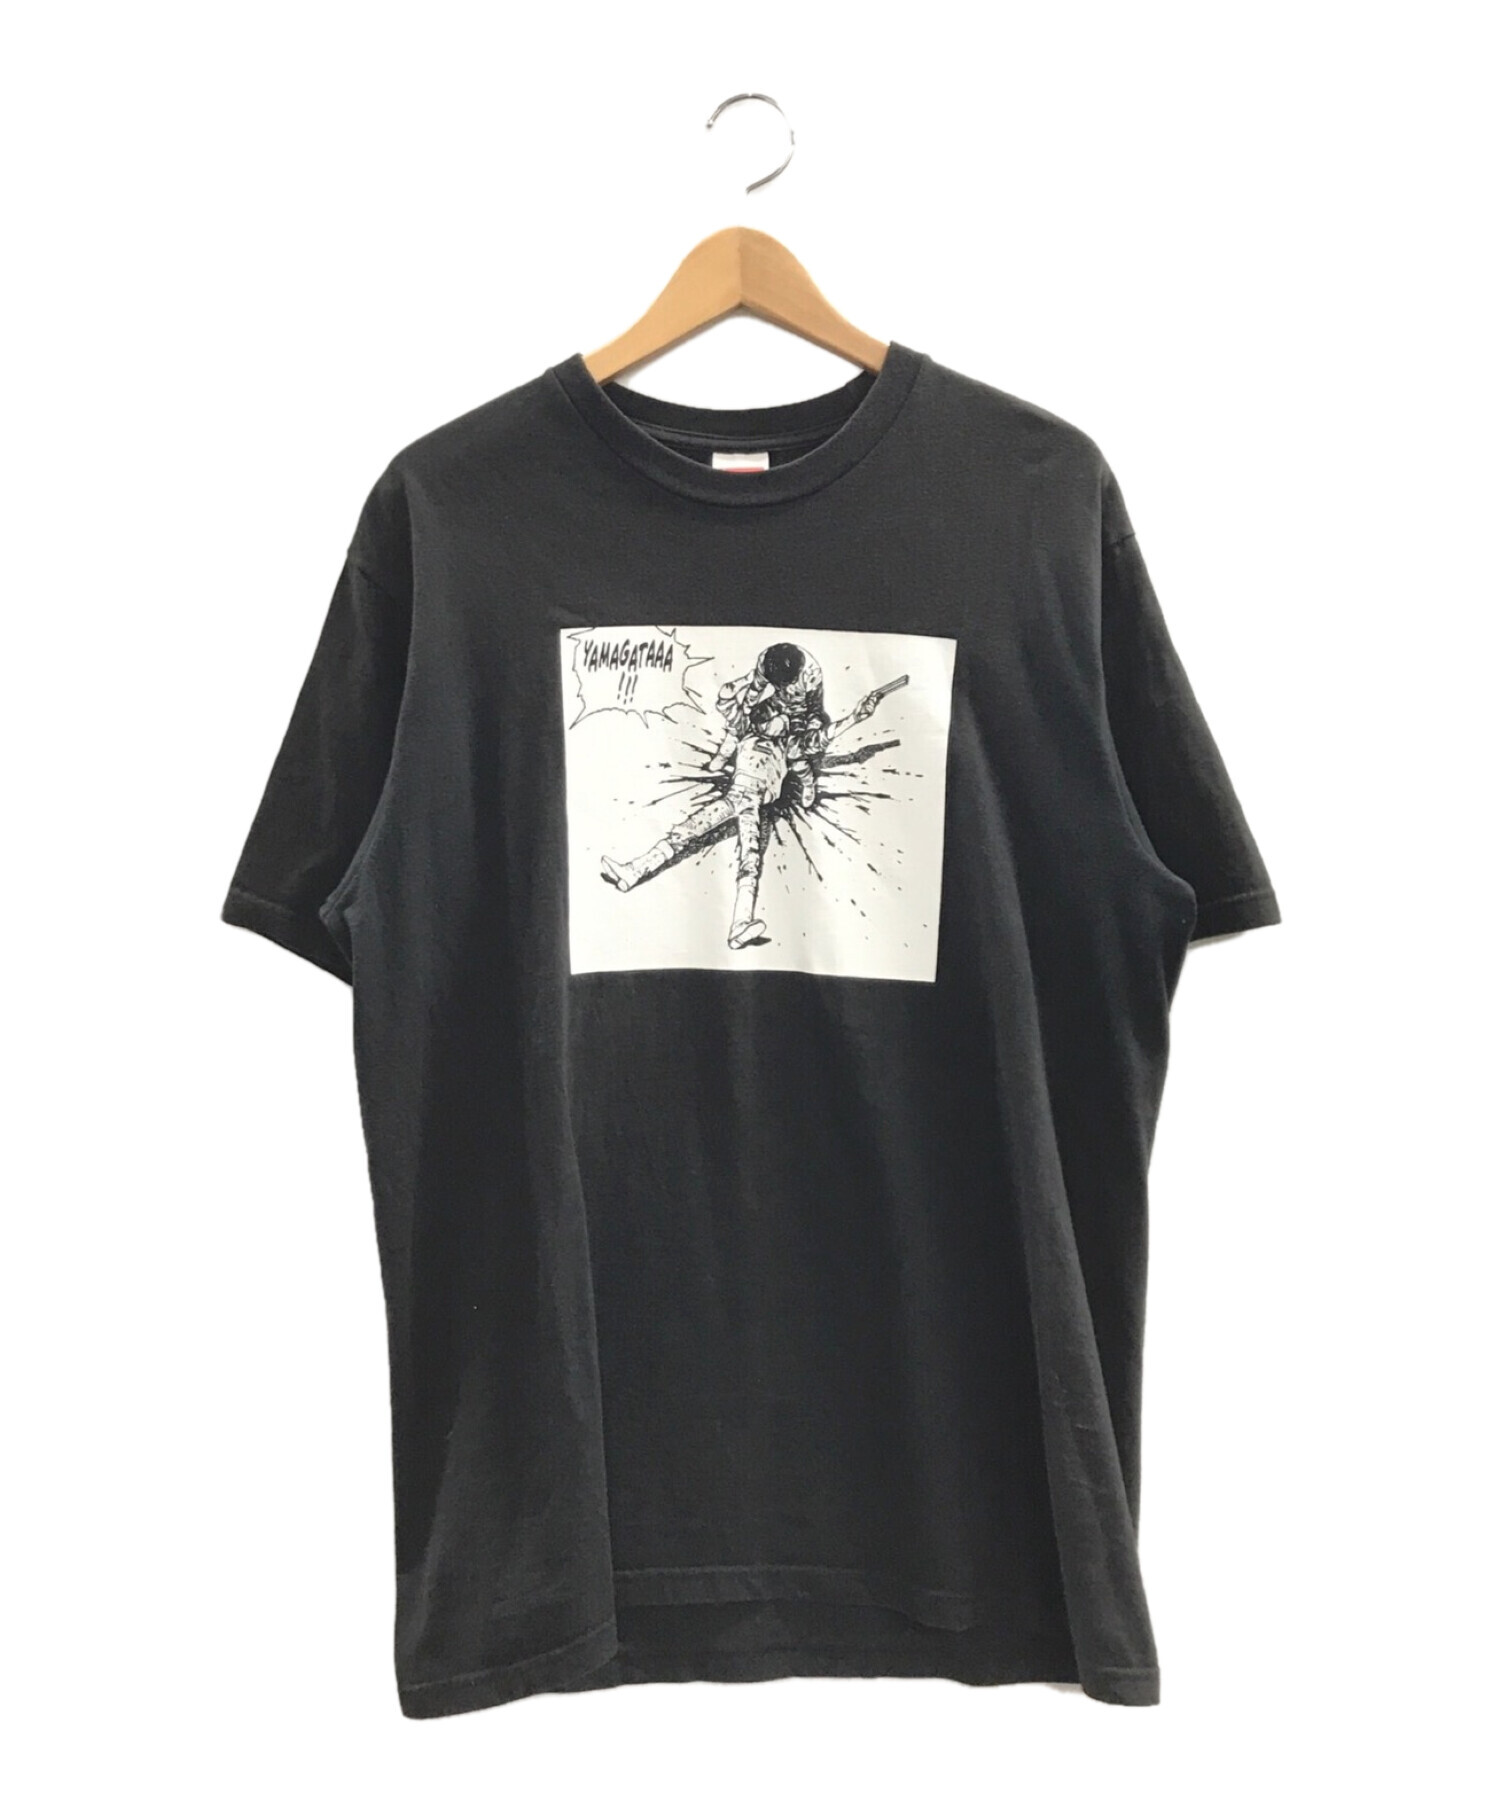 SUPREME × AKIRA Tシャツ M ①